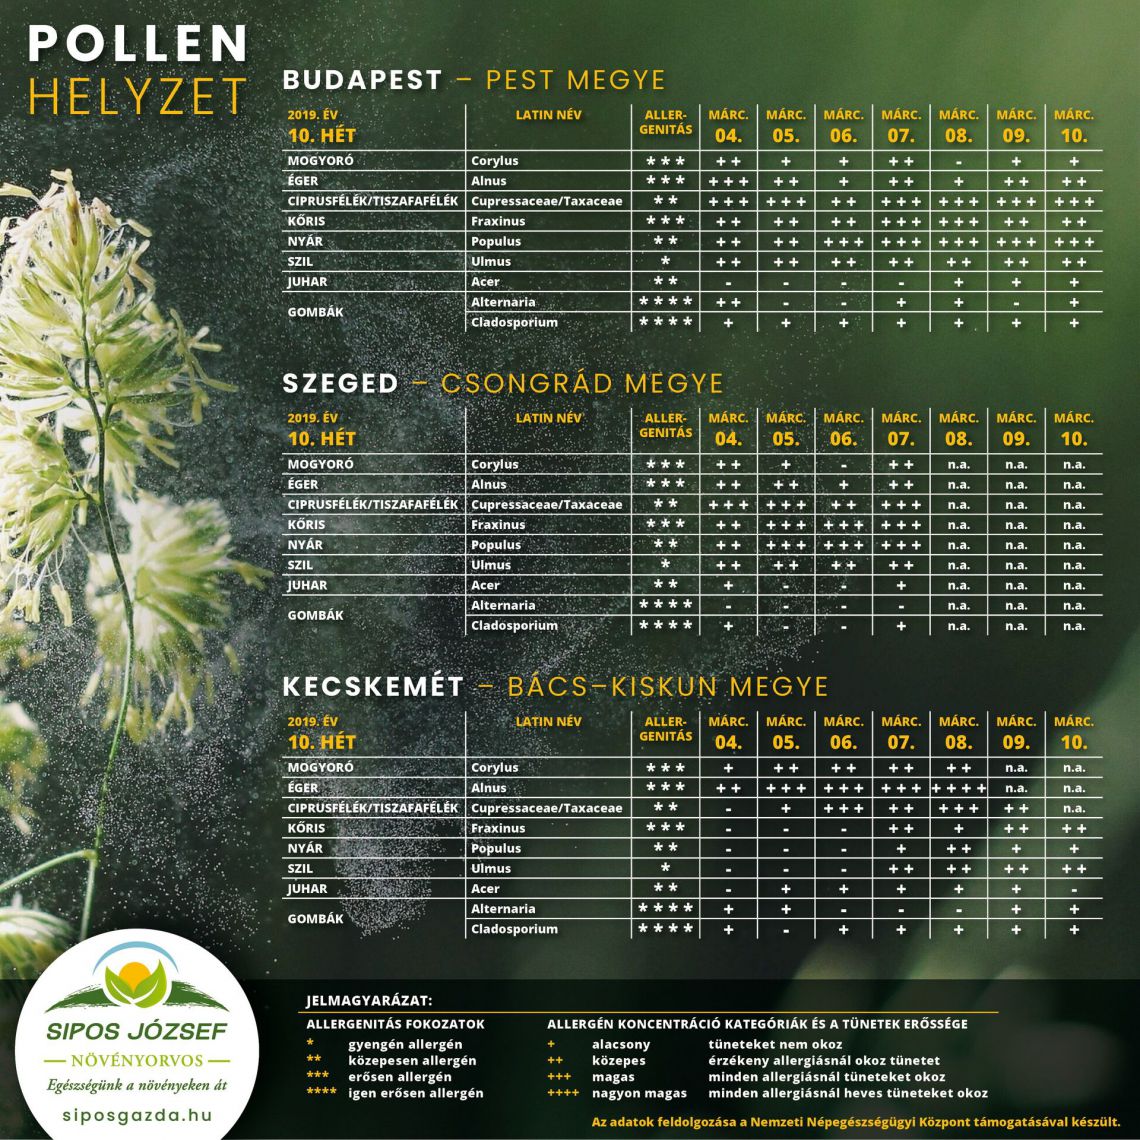 2019. 10. heti pollenjelentés